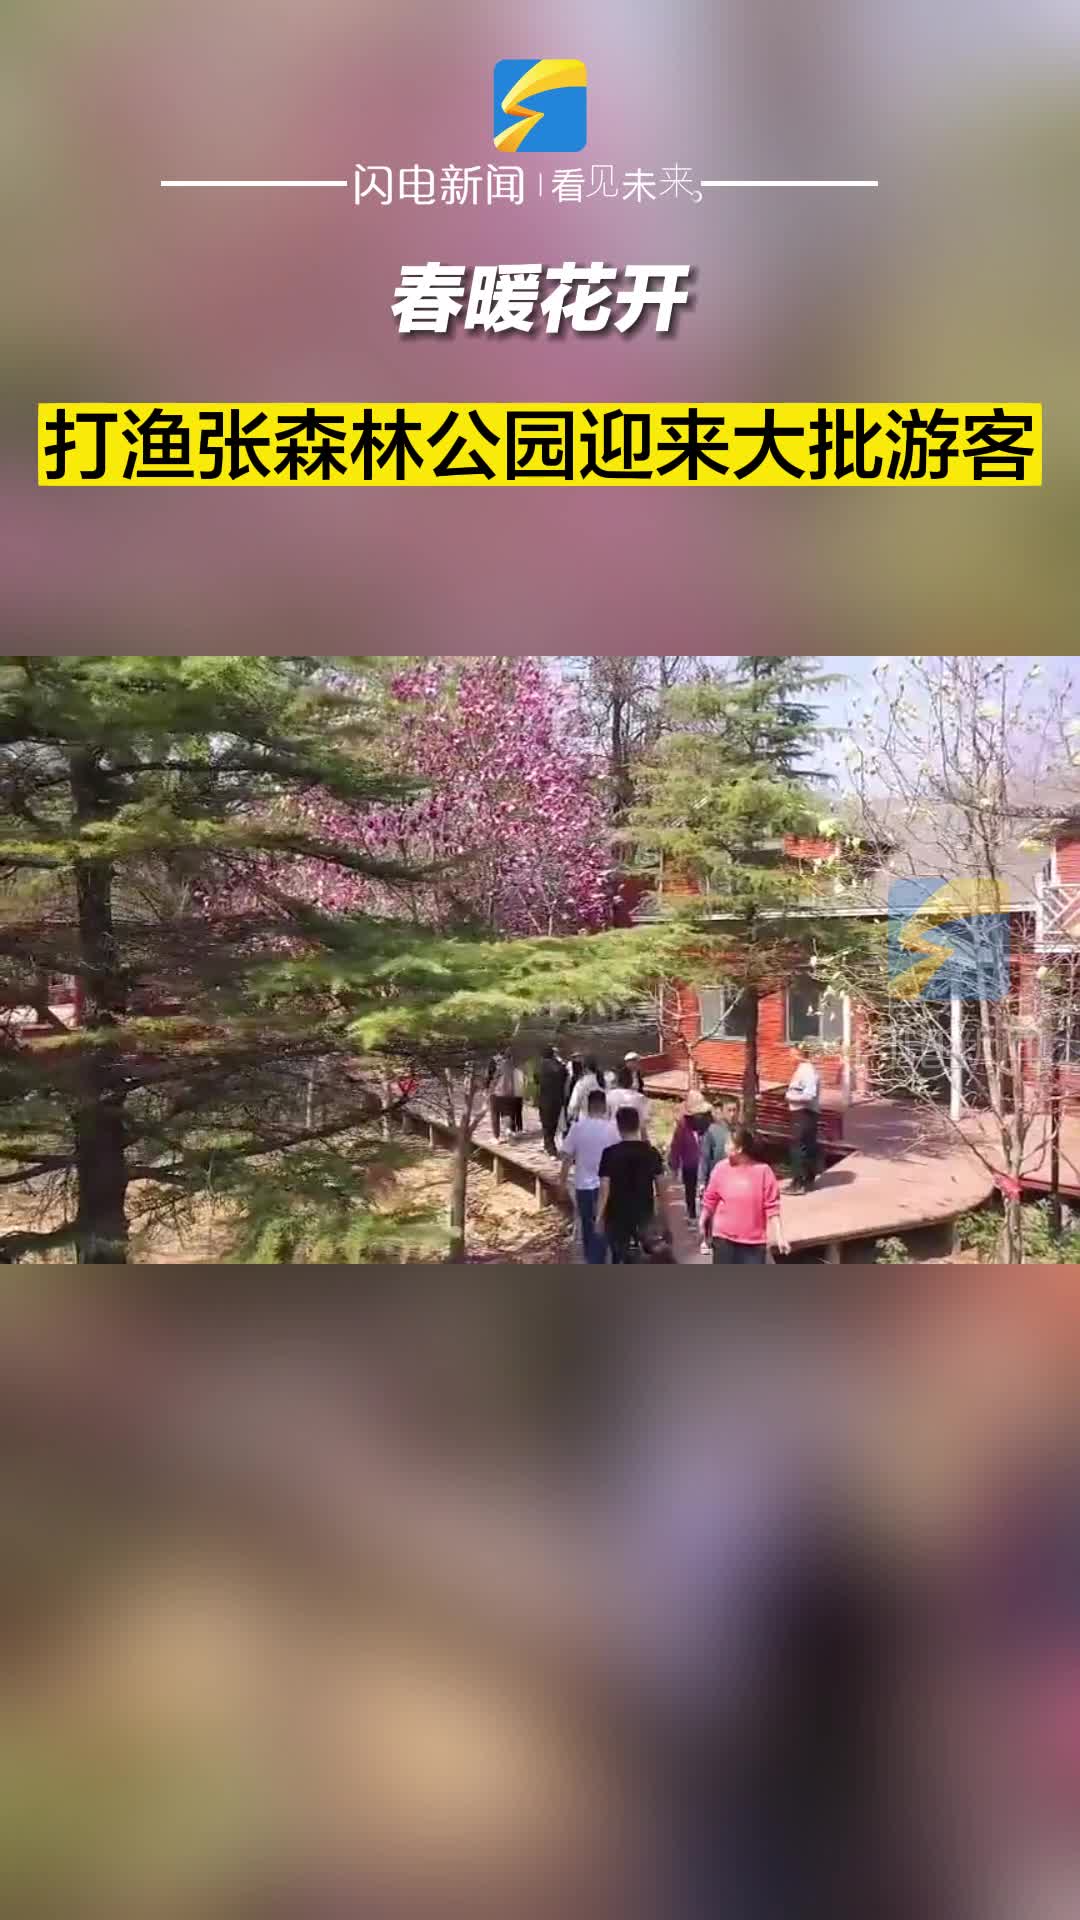 春暖花开 滨州博兴县打渔张森林公园迎来大批游客